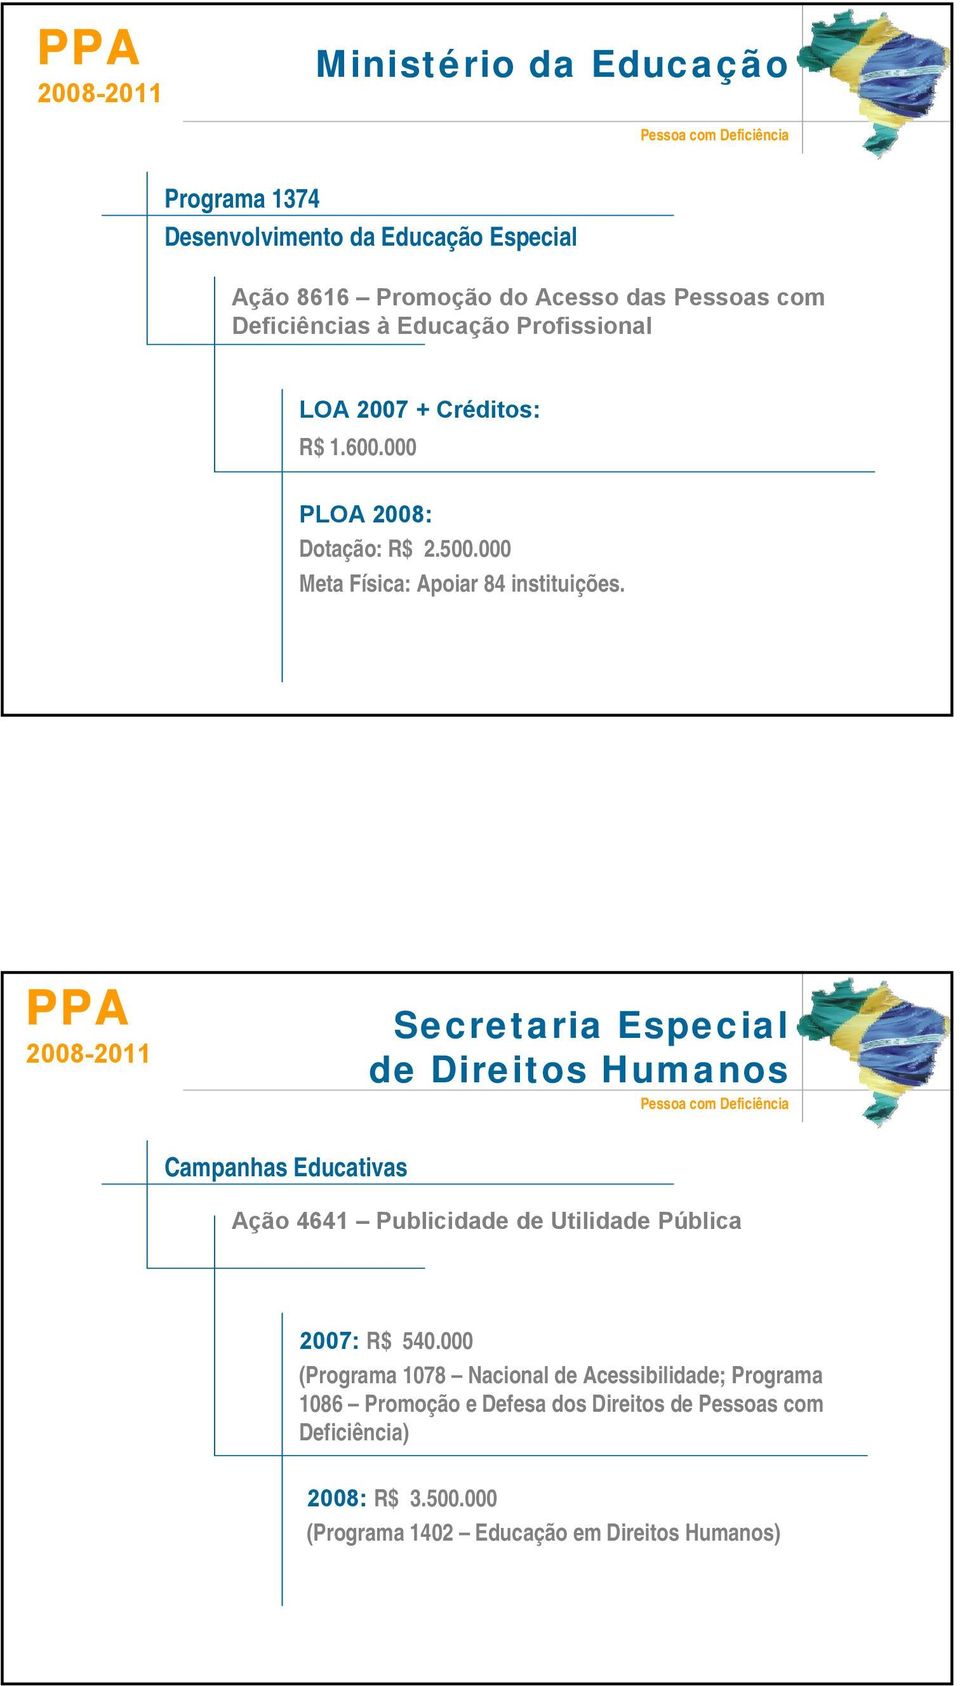 PPA Secretaria Especial de Direitos Humanos Pessoa com Deficiência Campanhas Educativas Ação 4641 Publicidade de Utilidade Pública 2007: R$ 540.